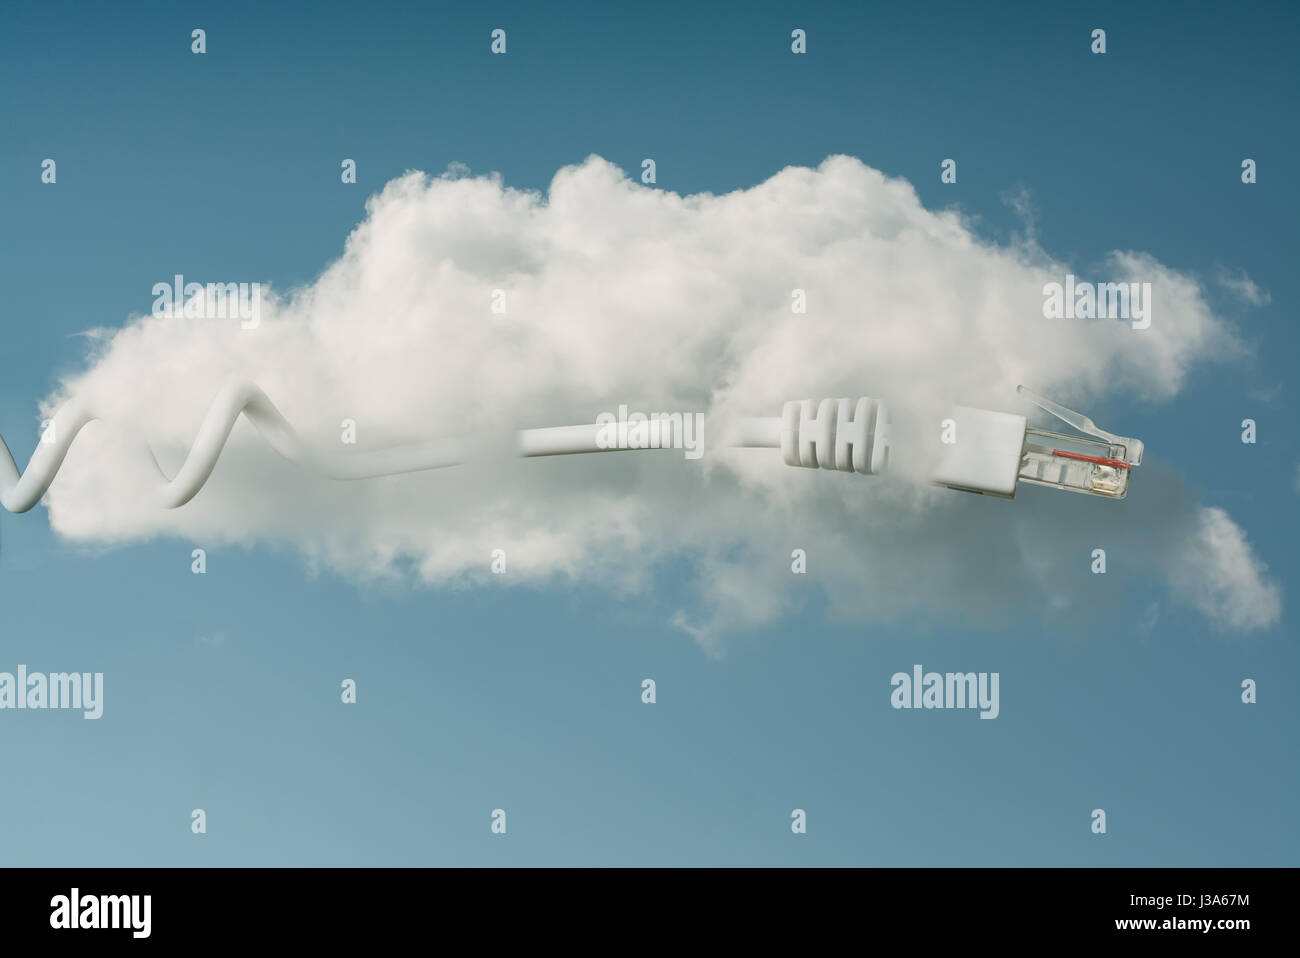 Le concept de cloud computing à sky Banque D'Images